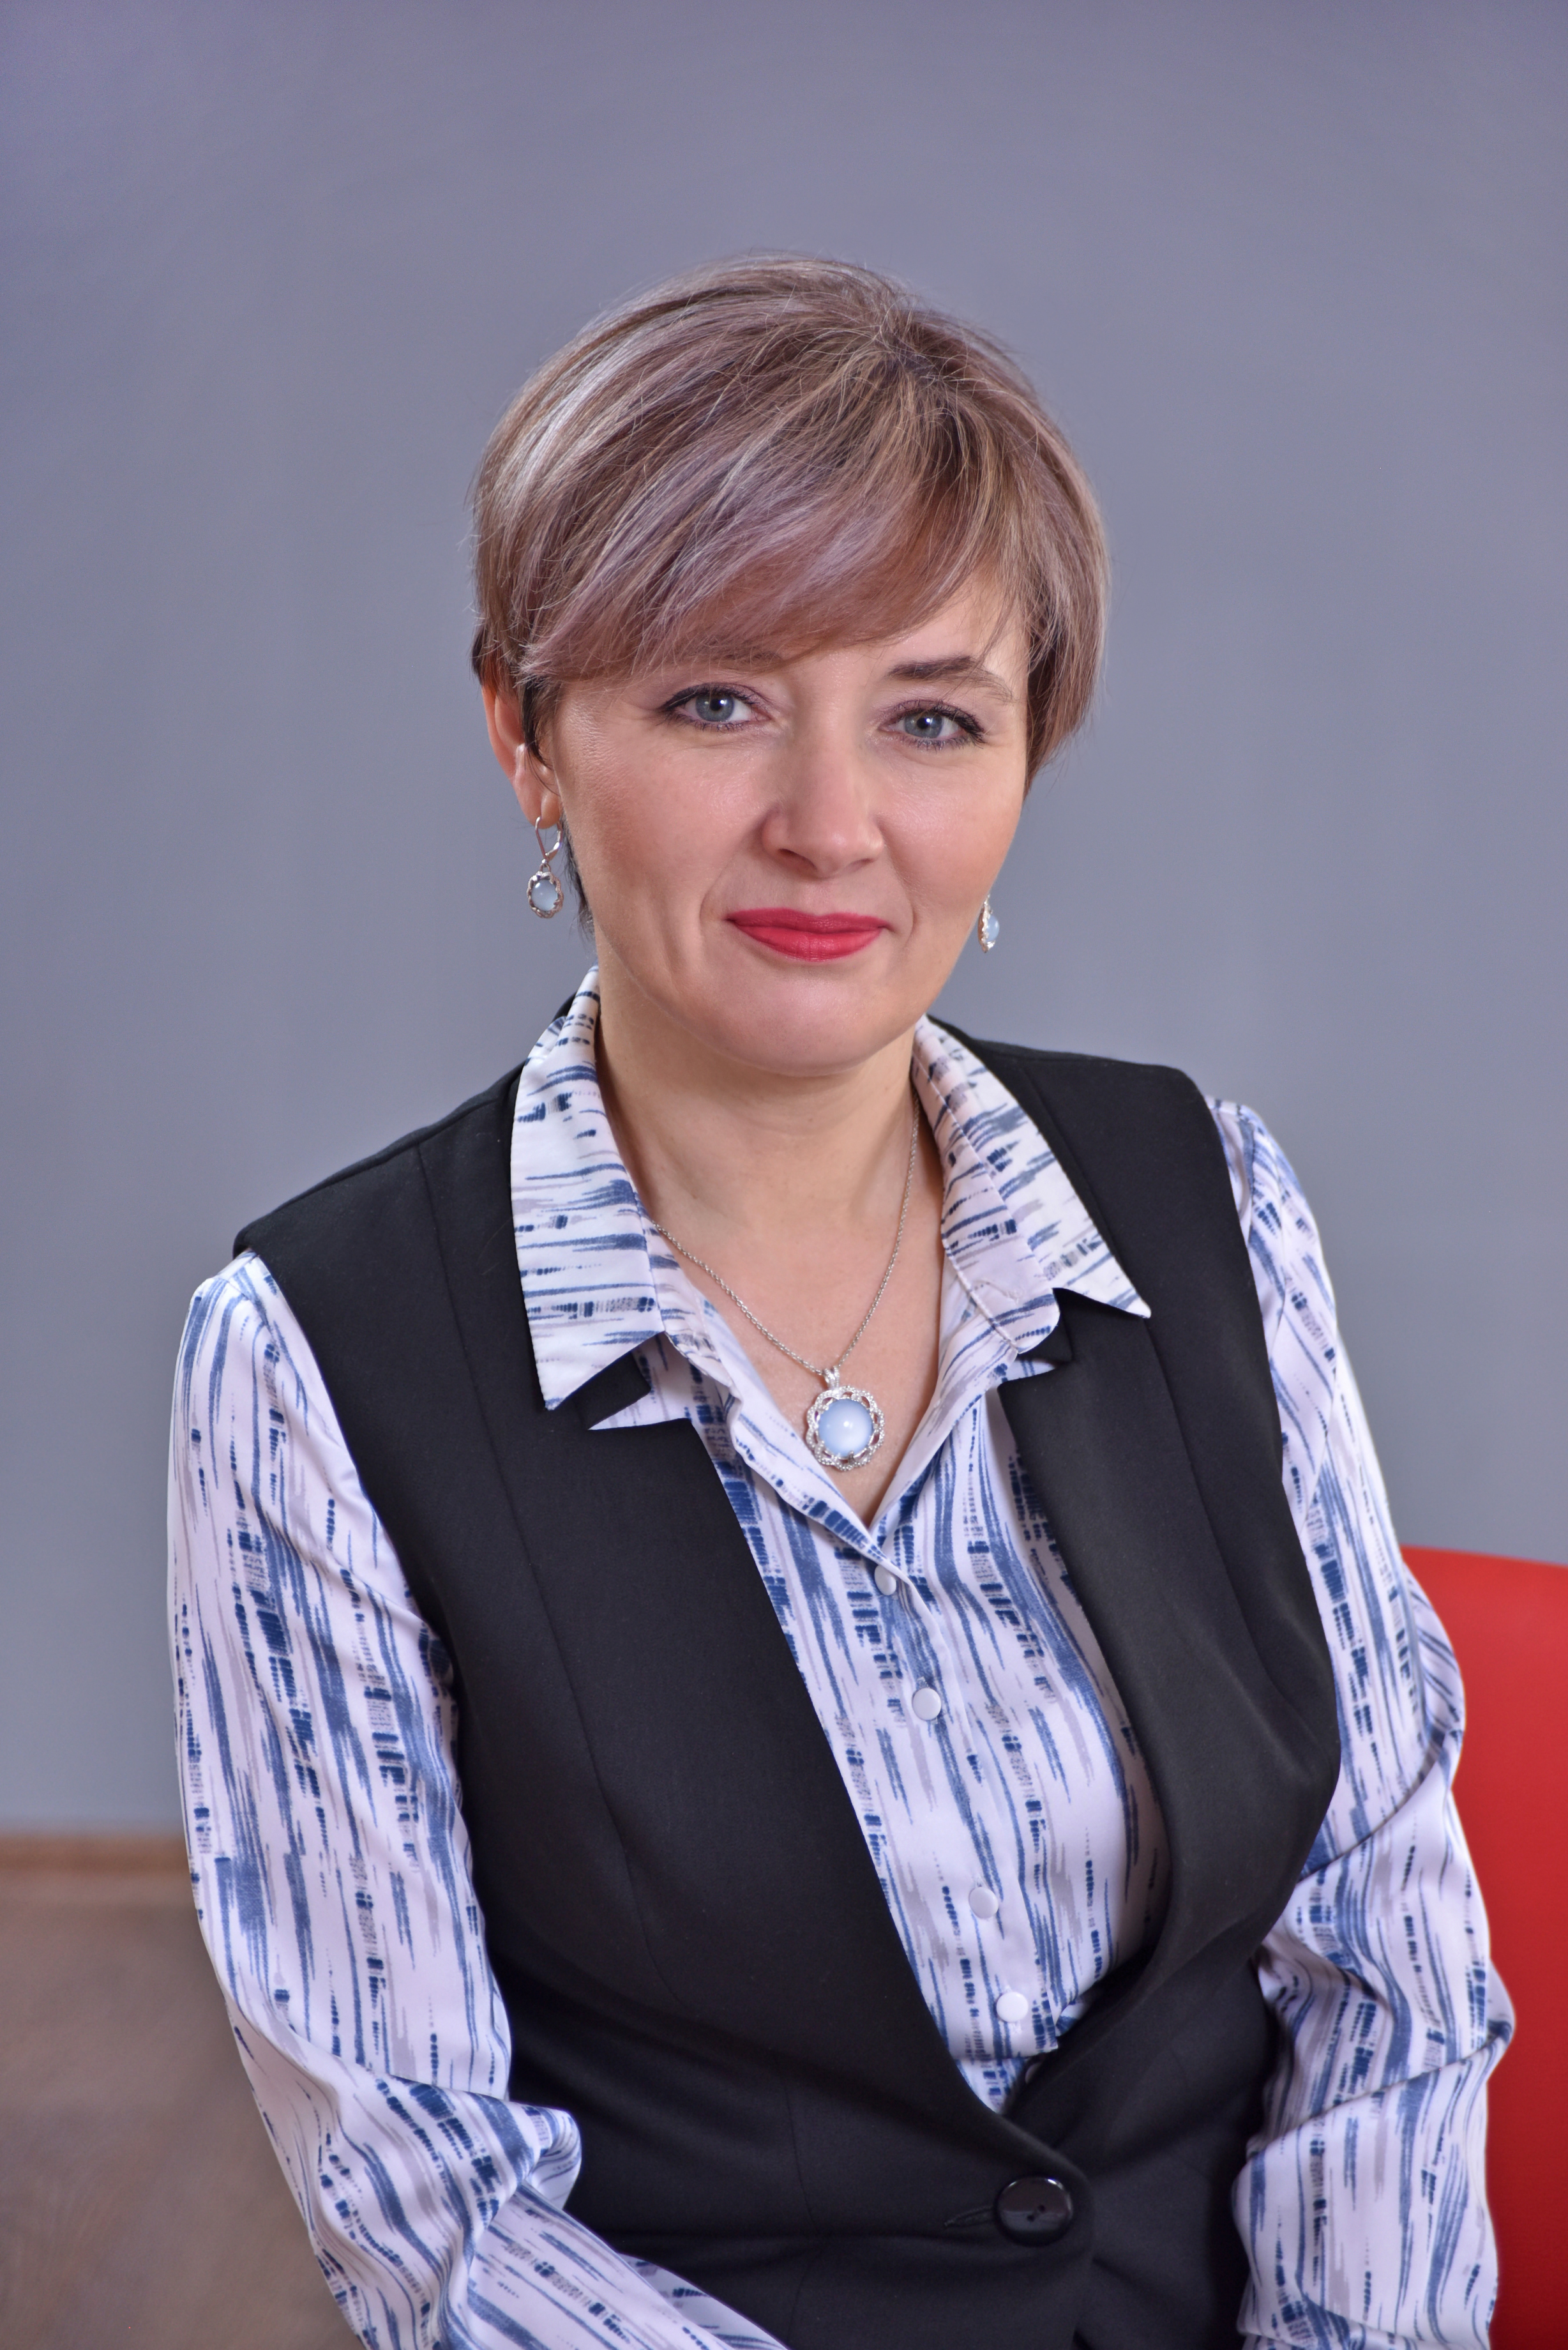 Трипельгорн Ольга Владимировна.